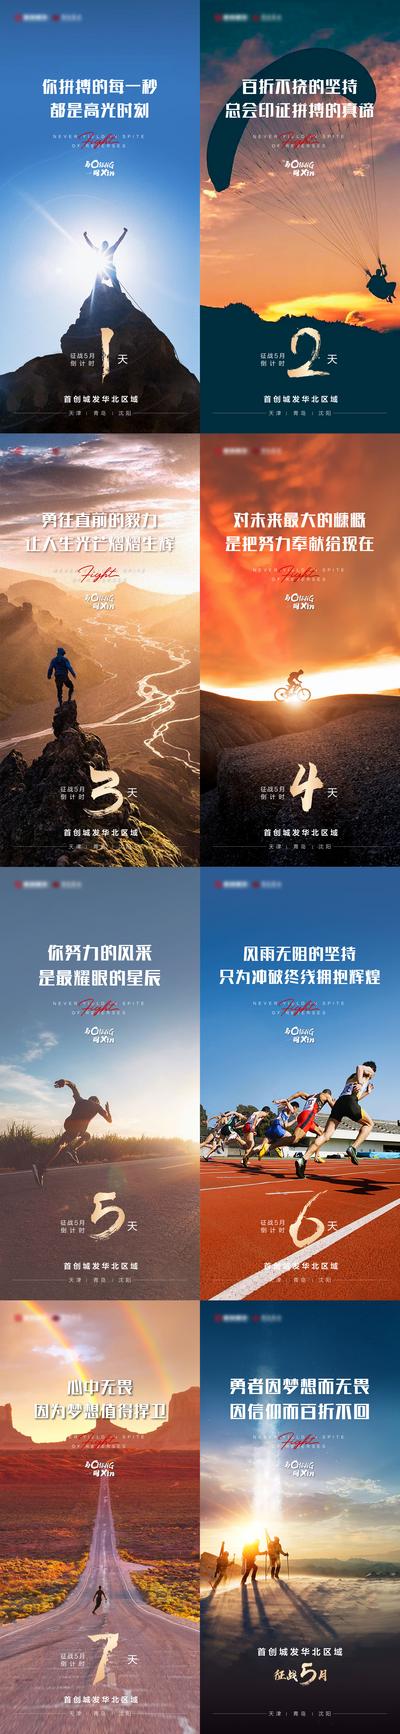 南门网 海报 地产 倒计时 冲刺 拼搏 极限运动 跳伞 攀岩 山顶